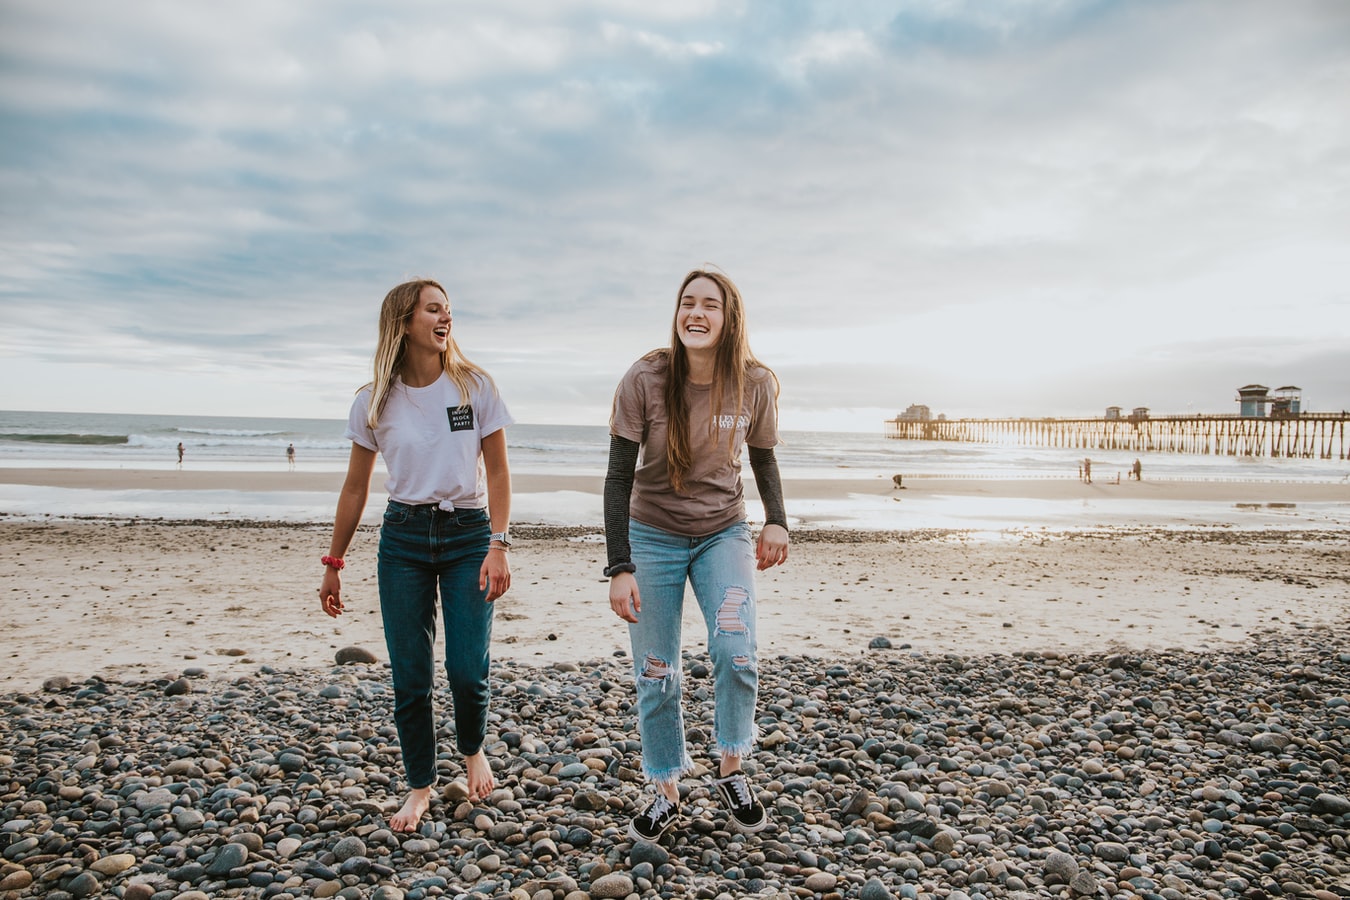 Auf dem Bild sind zwei Jugendliche lachend an einem Strand zu sehen.